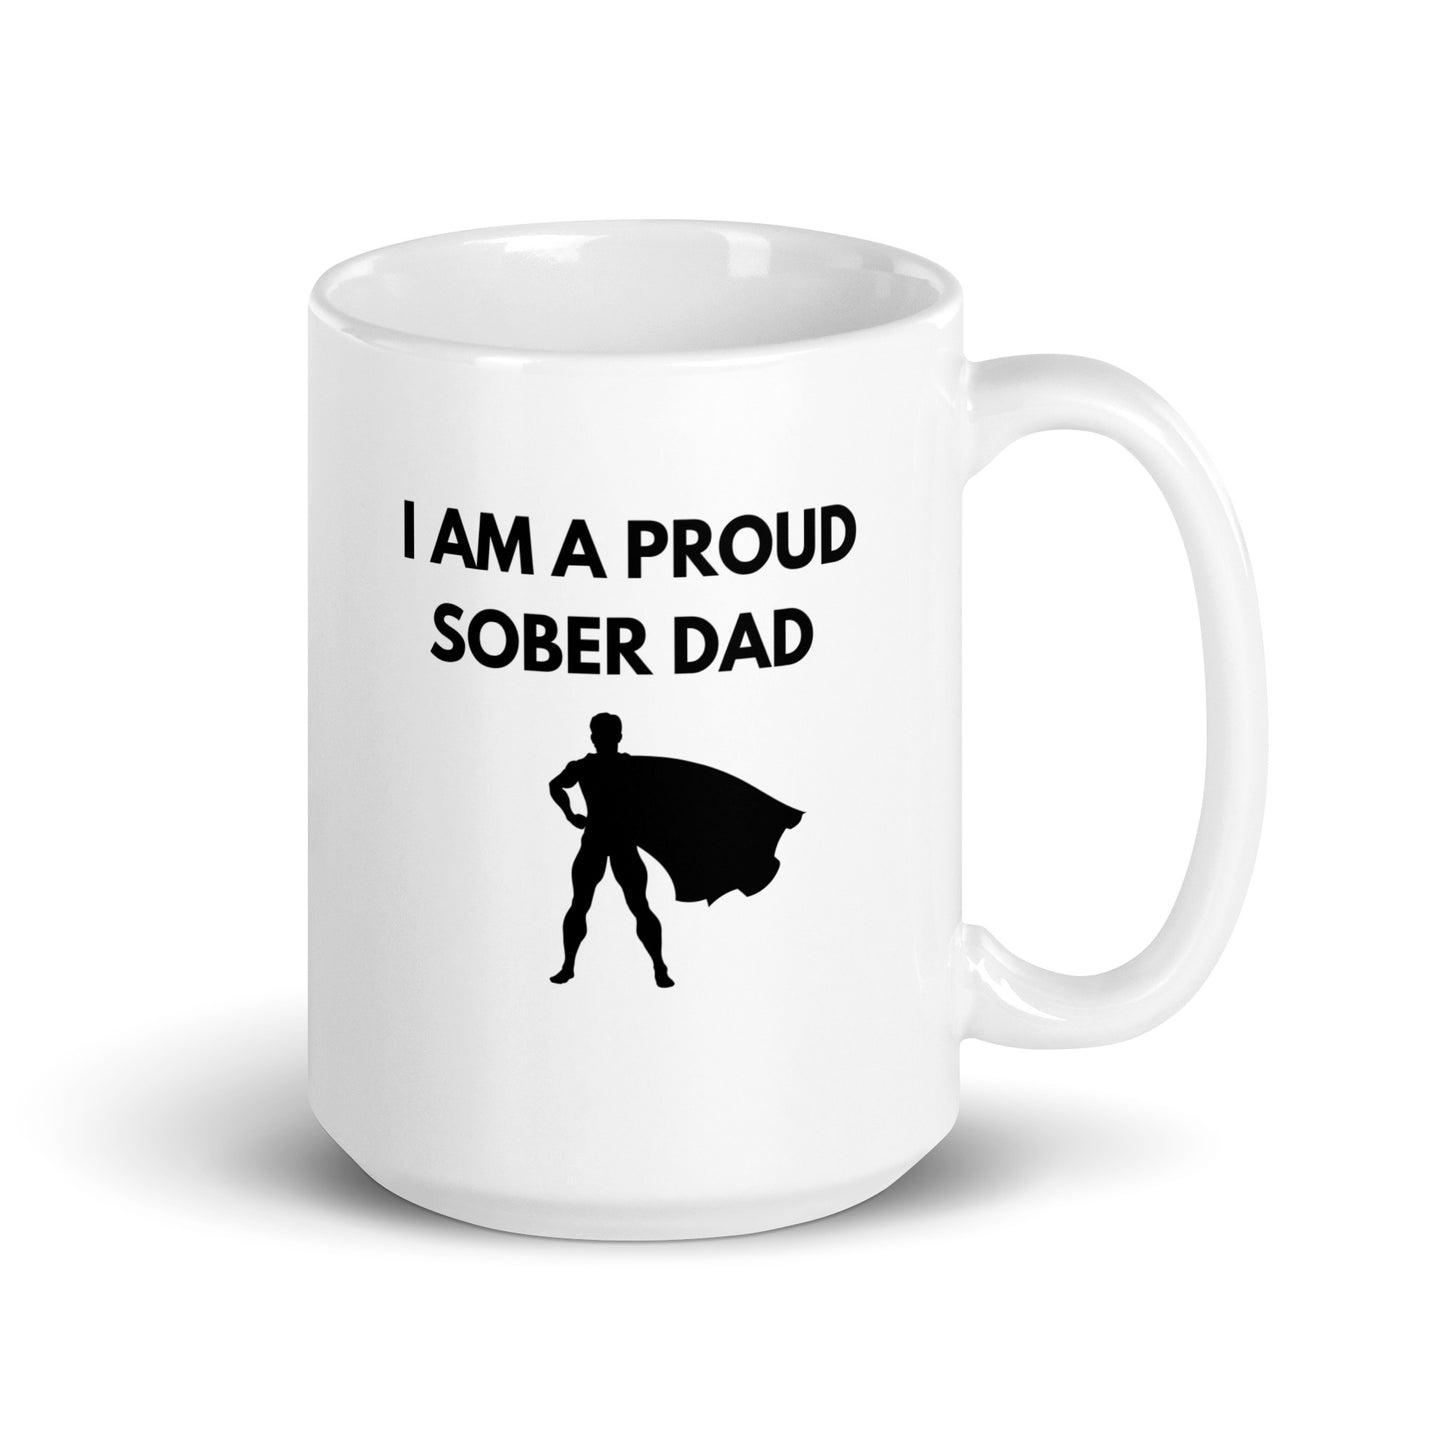 Sober Dad Mug